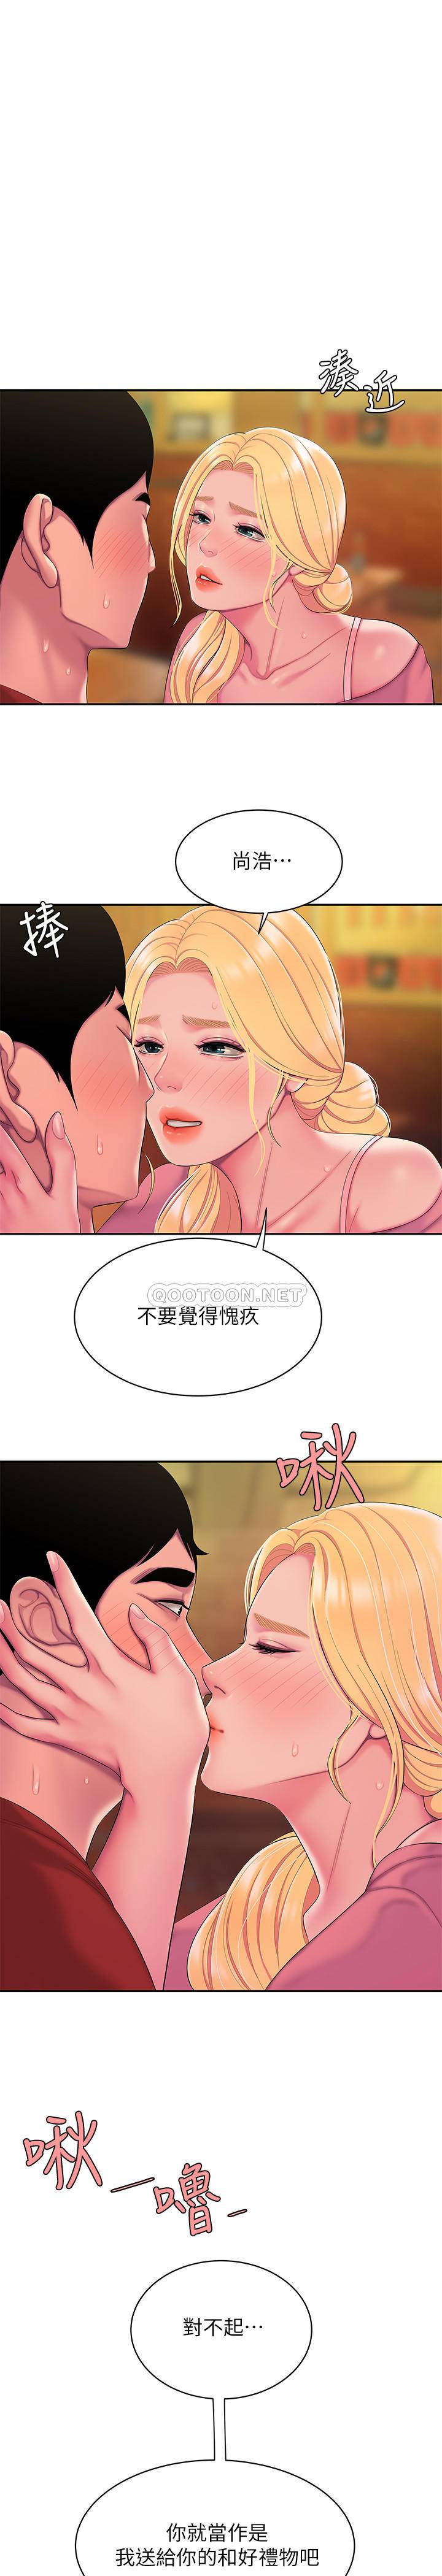 韩国污漫画 幸福外送員 第45话 1